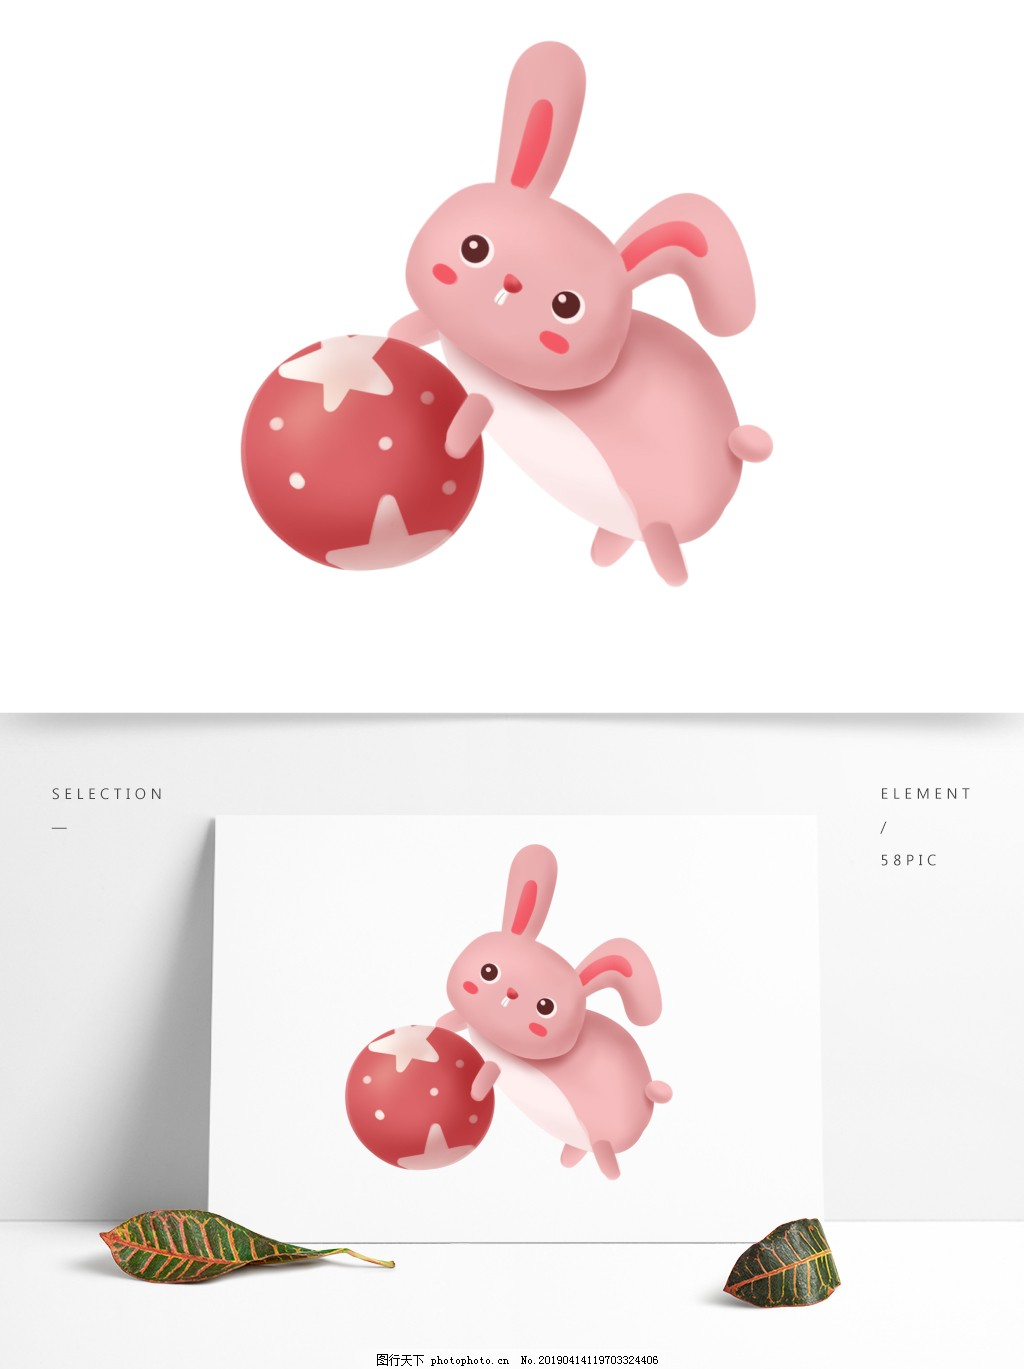 ‘~可爱粉色兔子装饰元素图片_装饰图案_平面创作元素-  ~’ 的图片